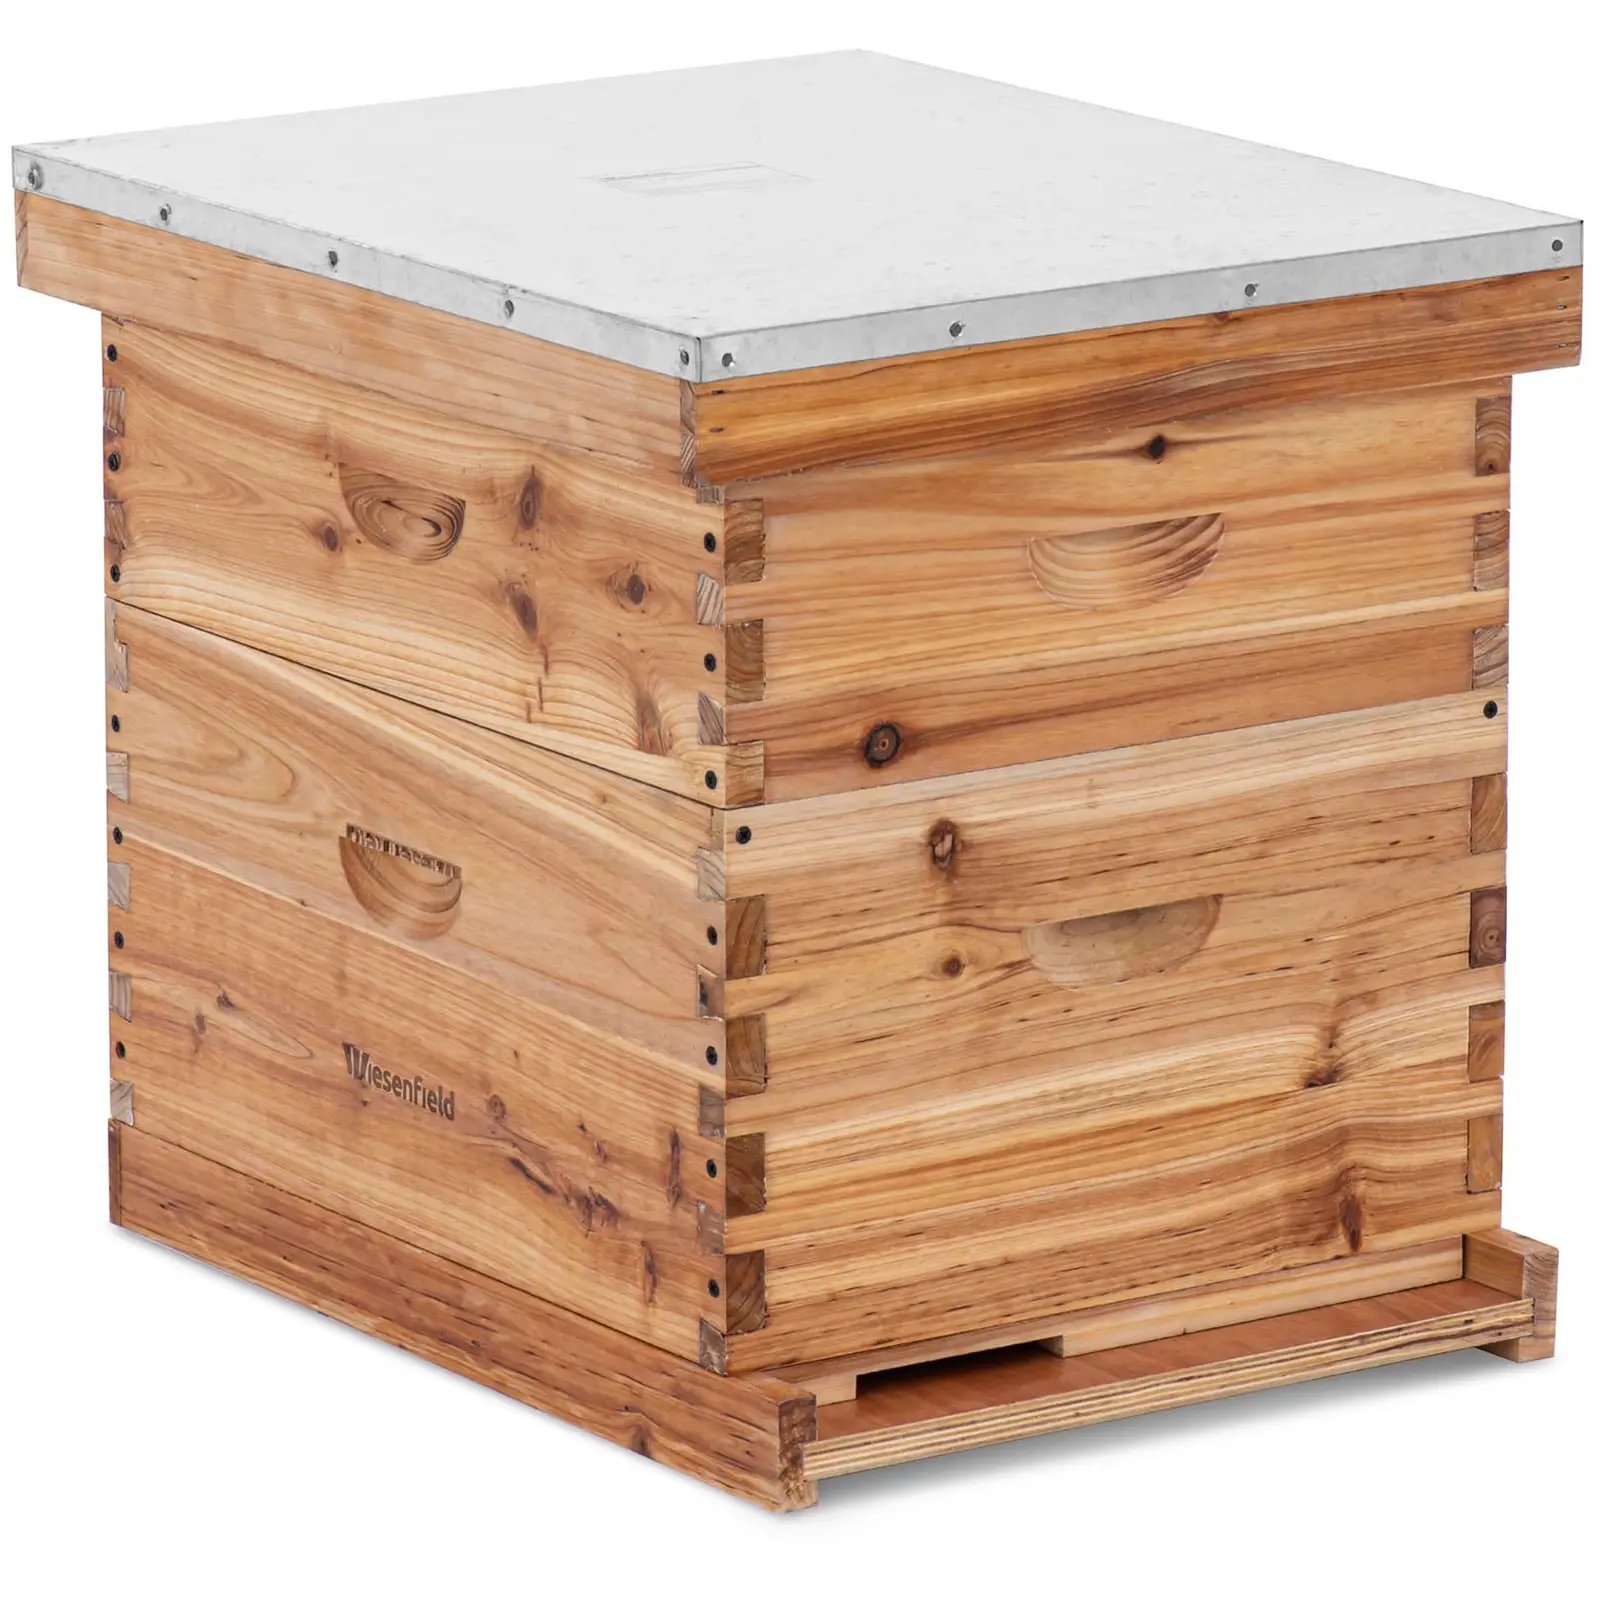 Langstroth Včelí úl 2 rámy a podlahová kazeta s vletovým otvorem - Včelařské potřeby Wiesenfield